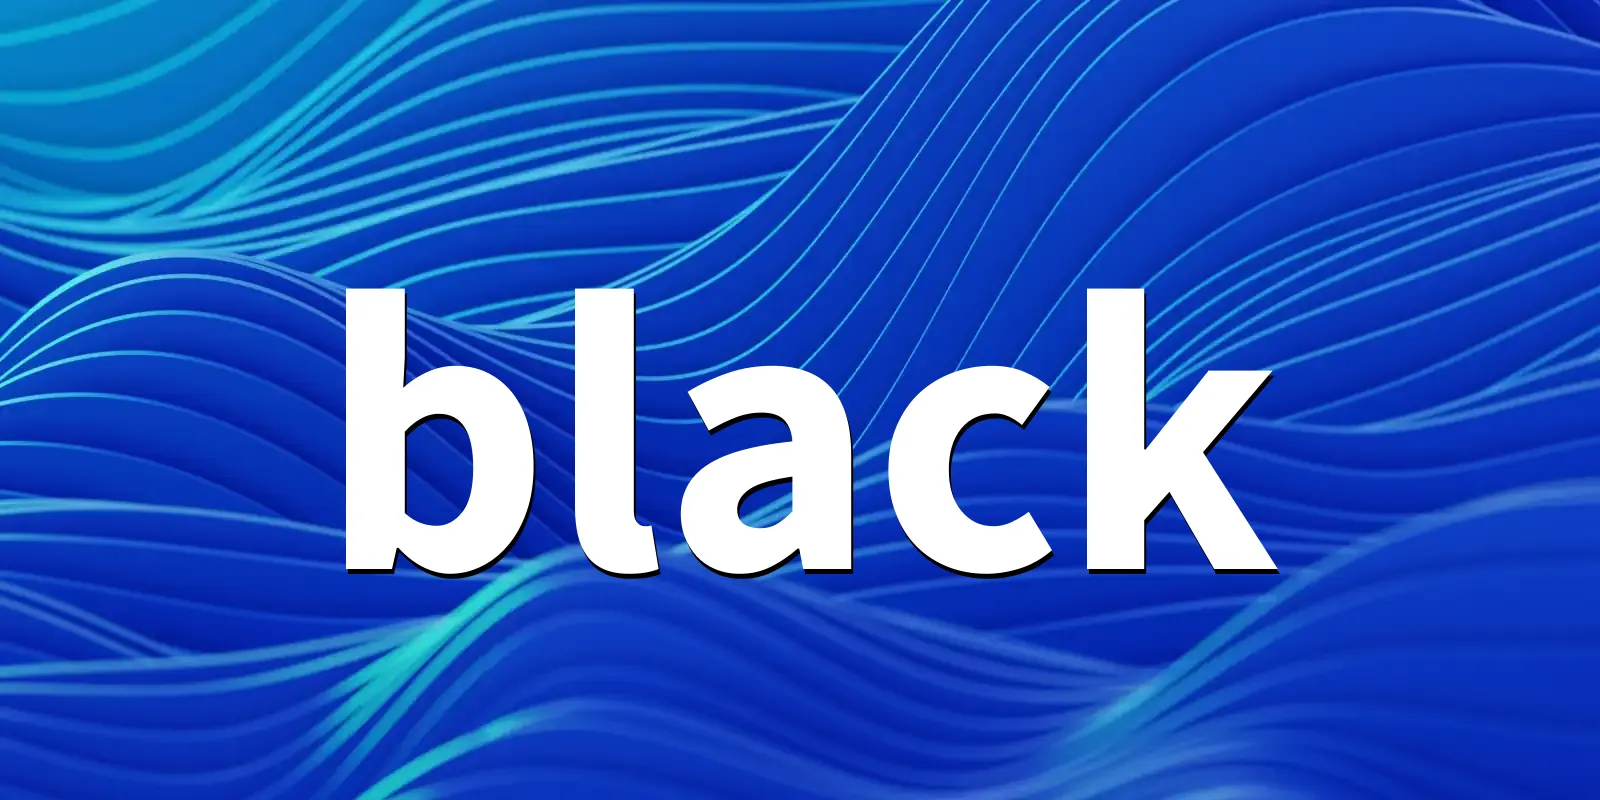 /pkg/b/black/black-banner.webp